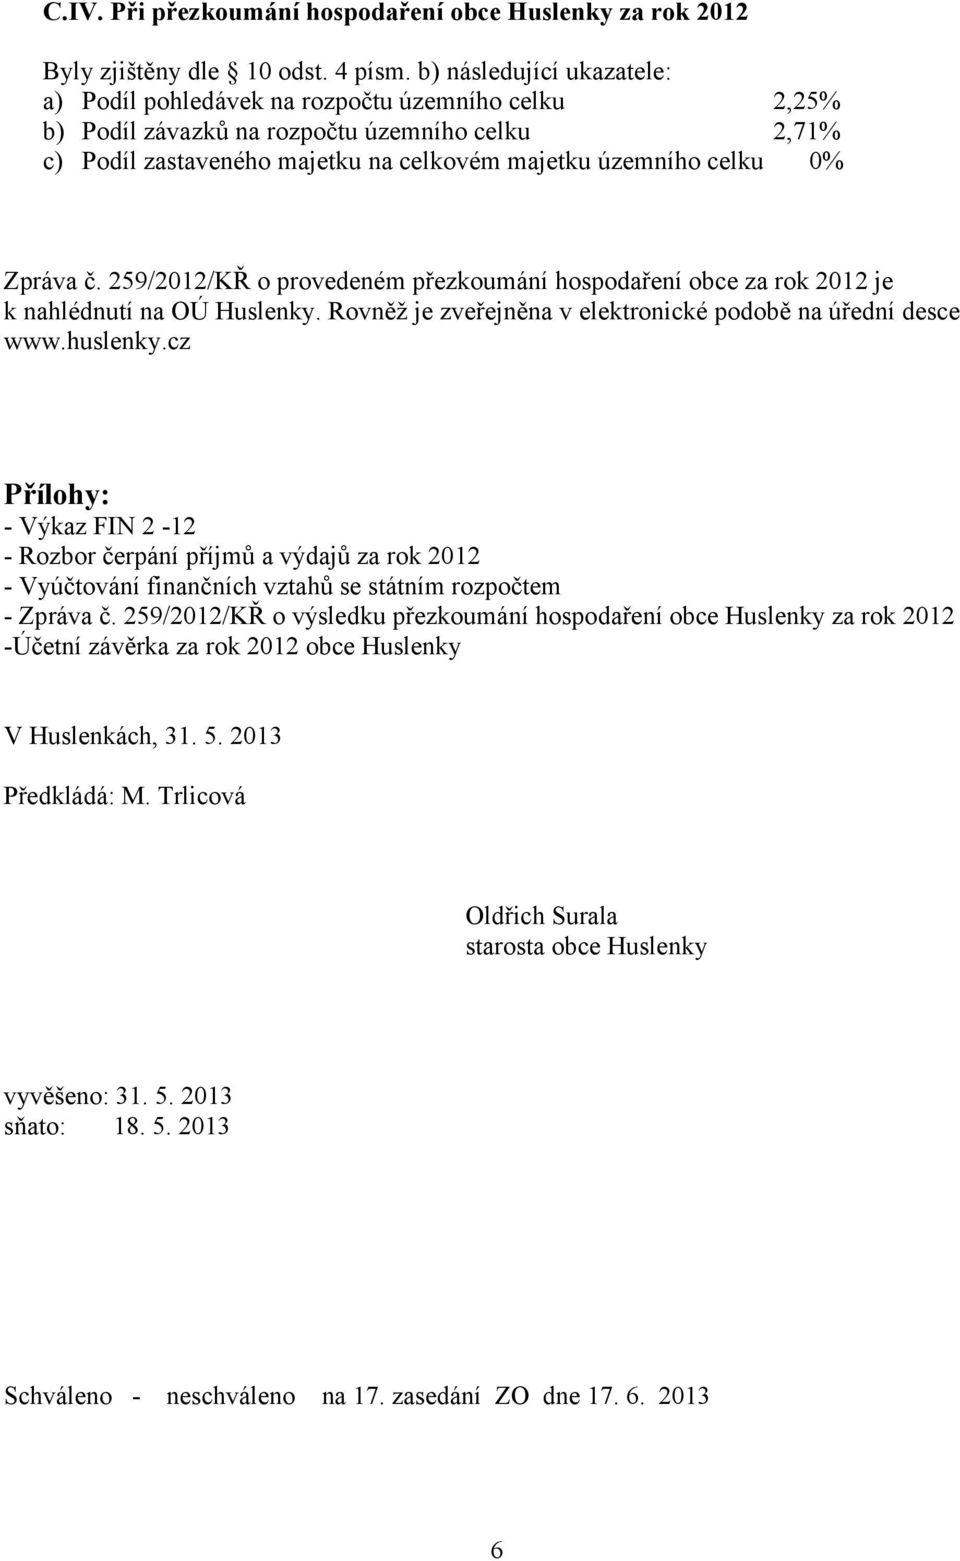 Zpráva č. 259/2012/KŘ o provedeném přezkoumání hospodaření obce za rok 2012 je k nahlédnutí na OÚ Huslenky. Rovněž je zveřejněna v elektronické podobě na úřední desce www.huslenky.